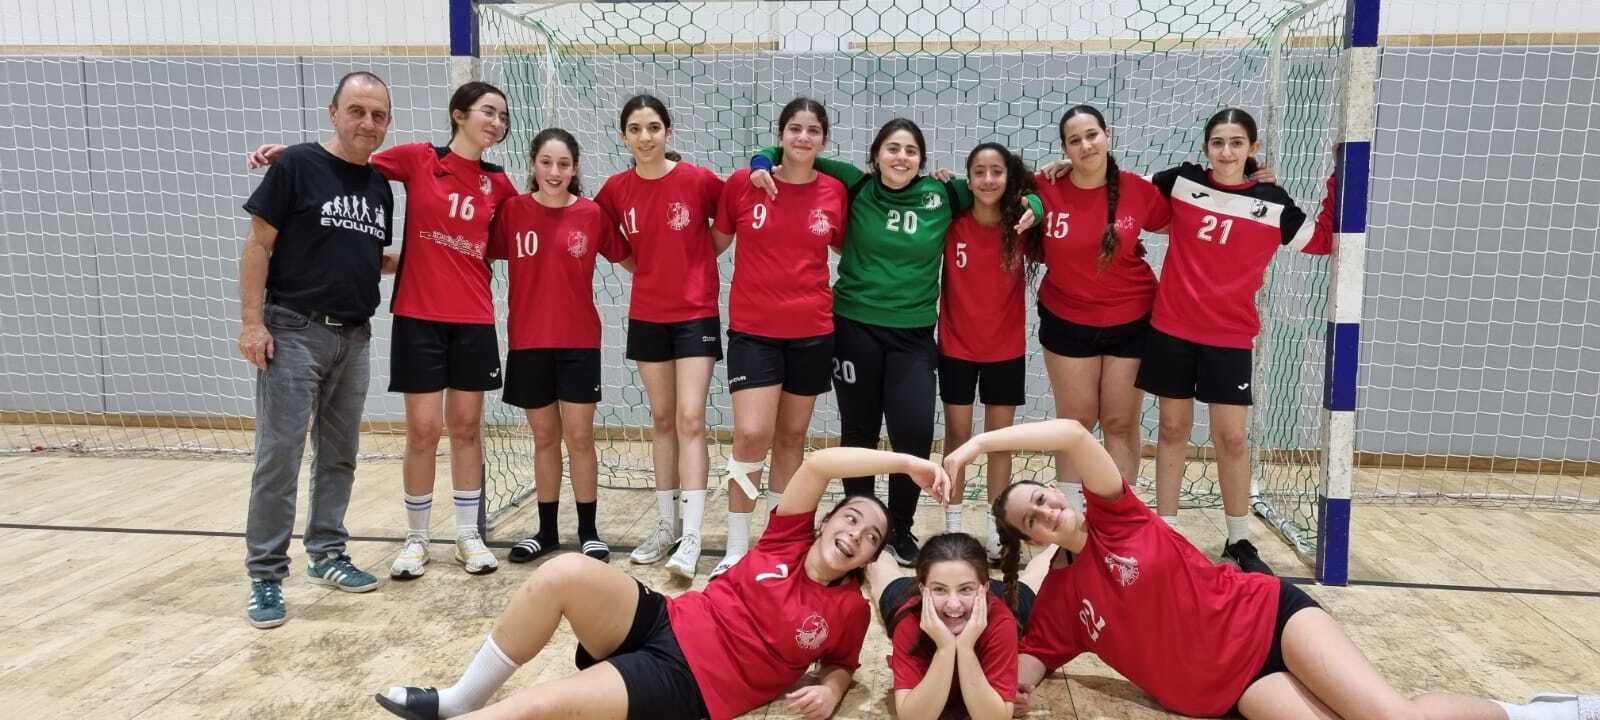 בנות ח מנצחות את קבוצת  "ארזים" רמת גן.